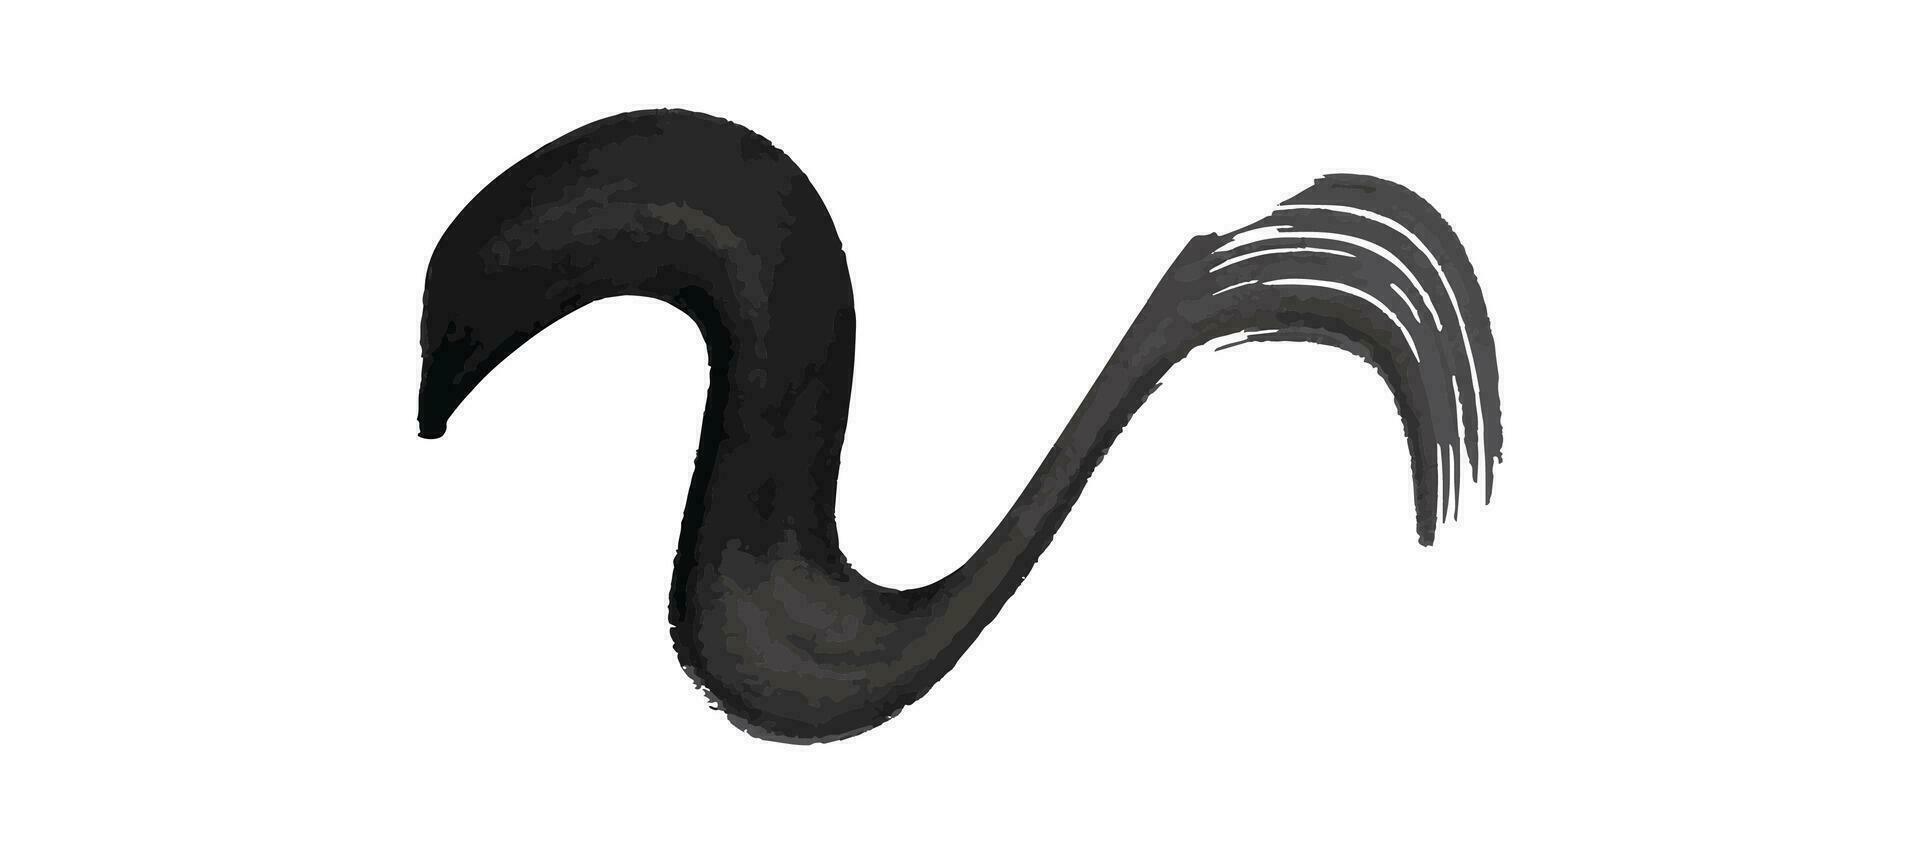 svart vågig grunge borsta stroke. målad bläck rand. bläck fläck isolerat på vit bakgrund. vektor illustration